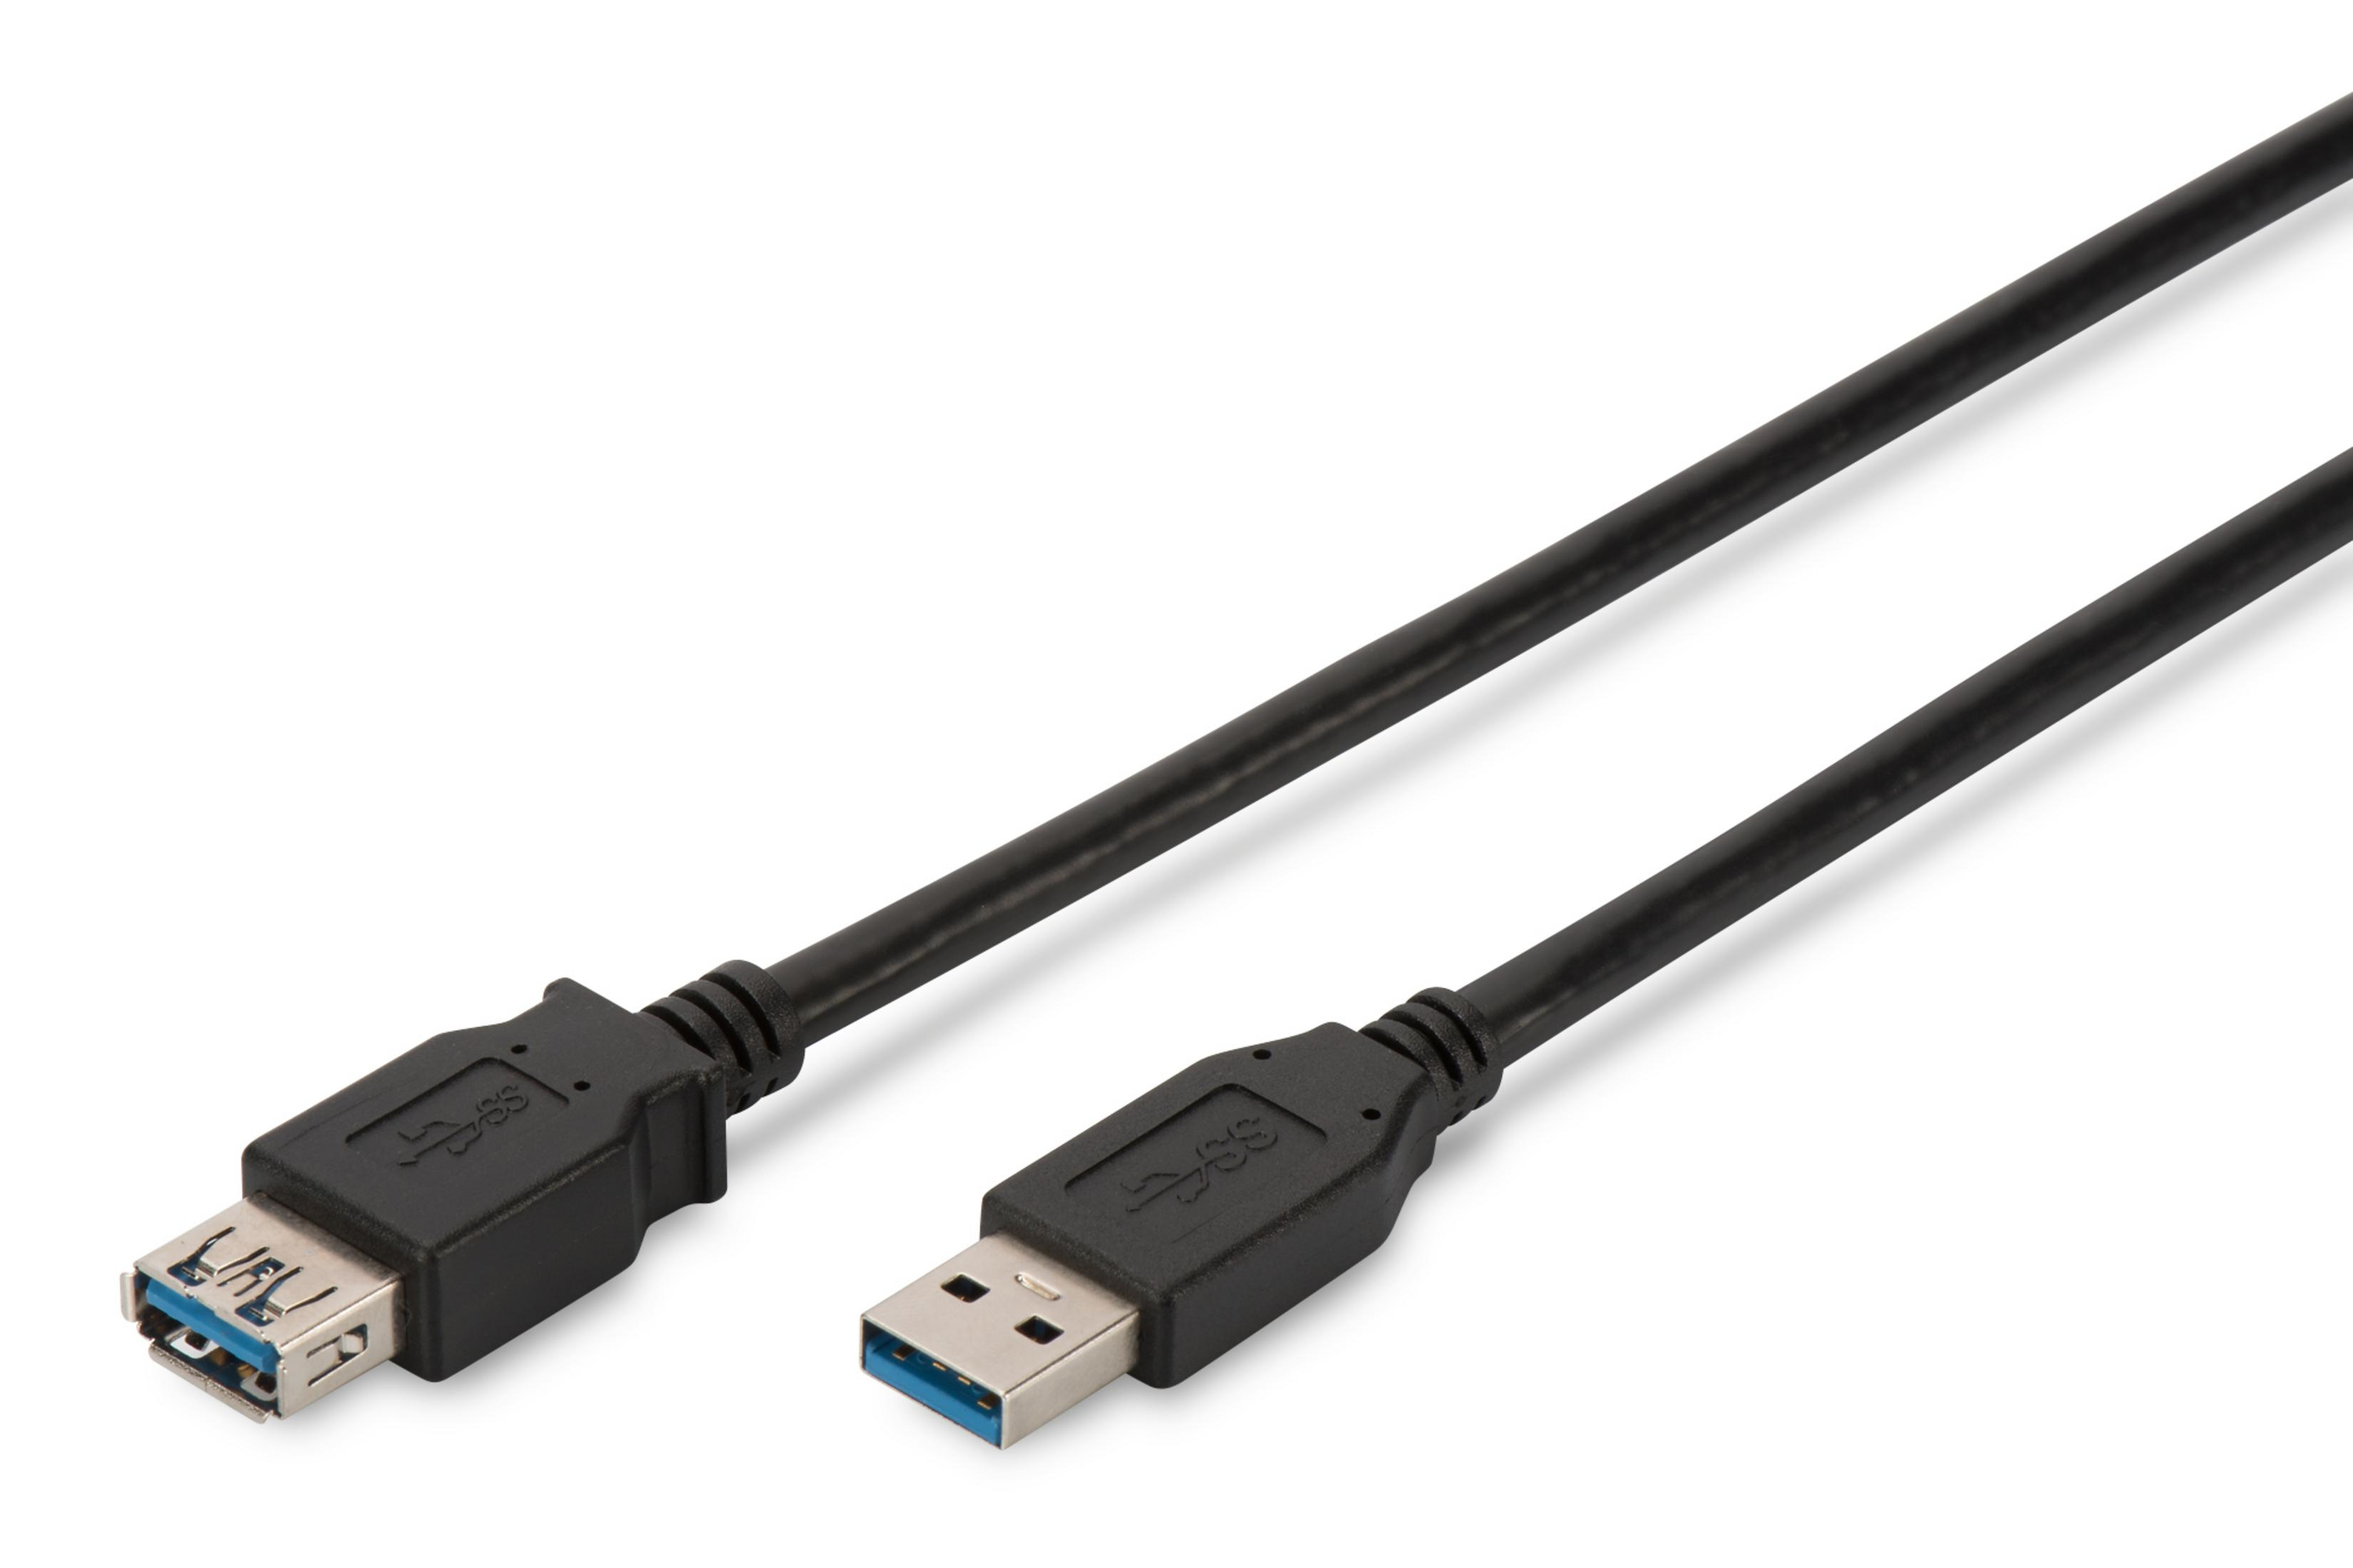 USB SCHWARZ USB-Kabel 1,8M DK-300203-018-S DIGITUS 3.0 VERLÄNGERUNG